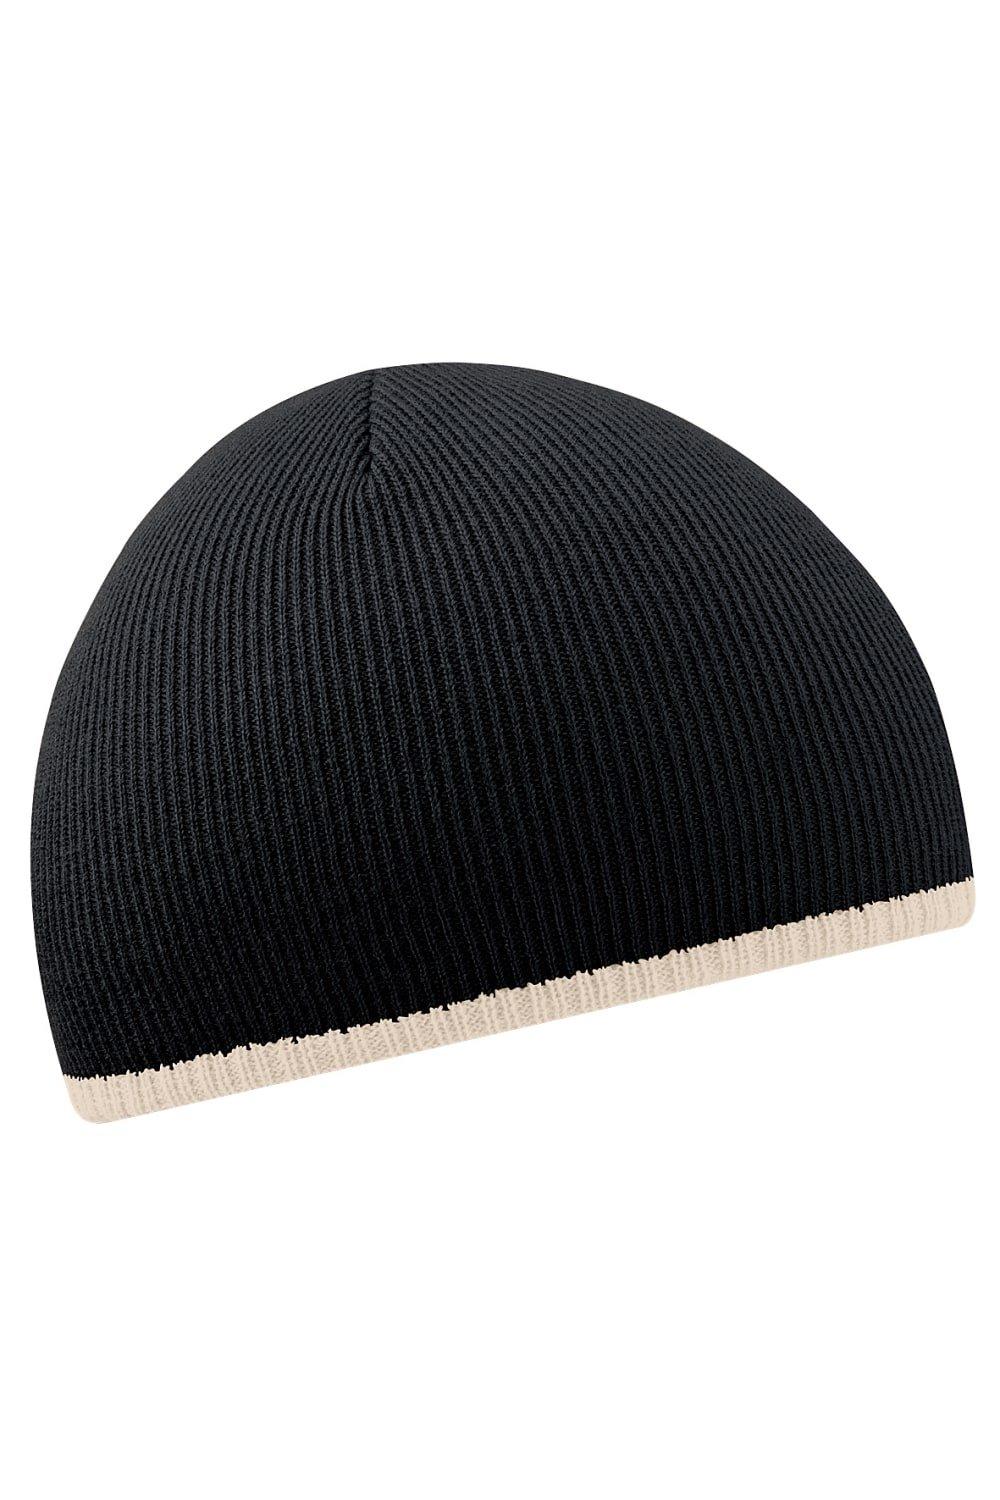 Двухцветная вязаная зимняя шапка-бини Beechfield, черный